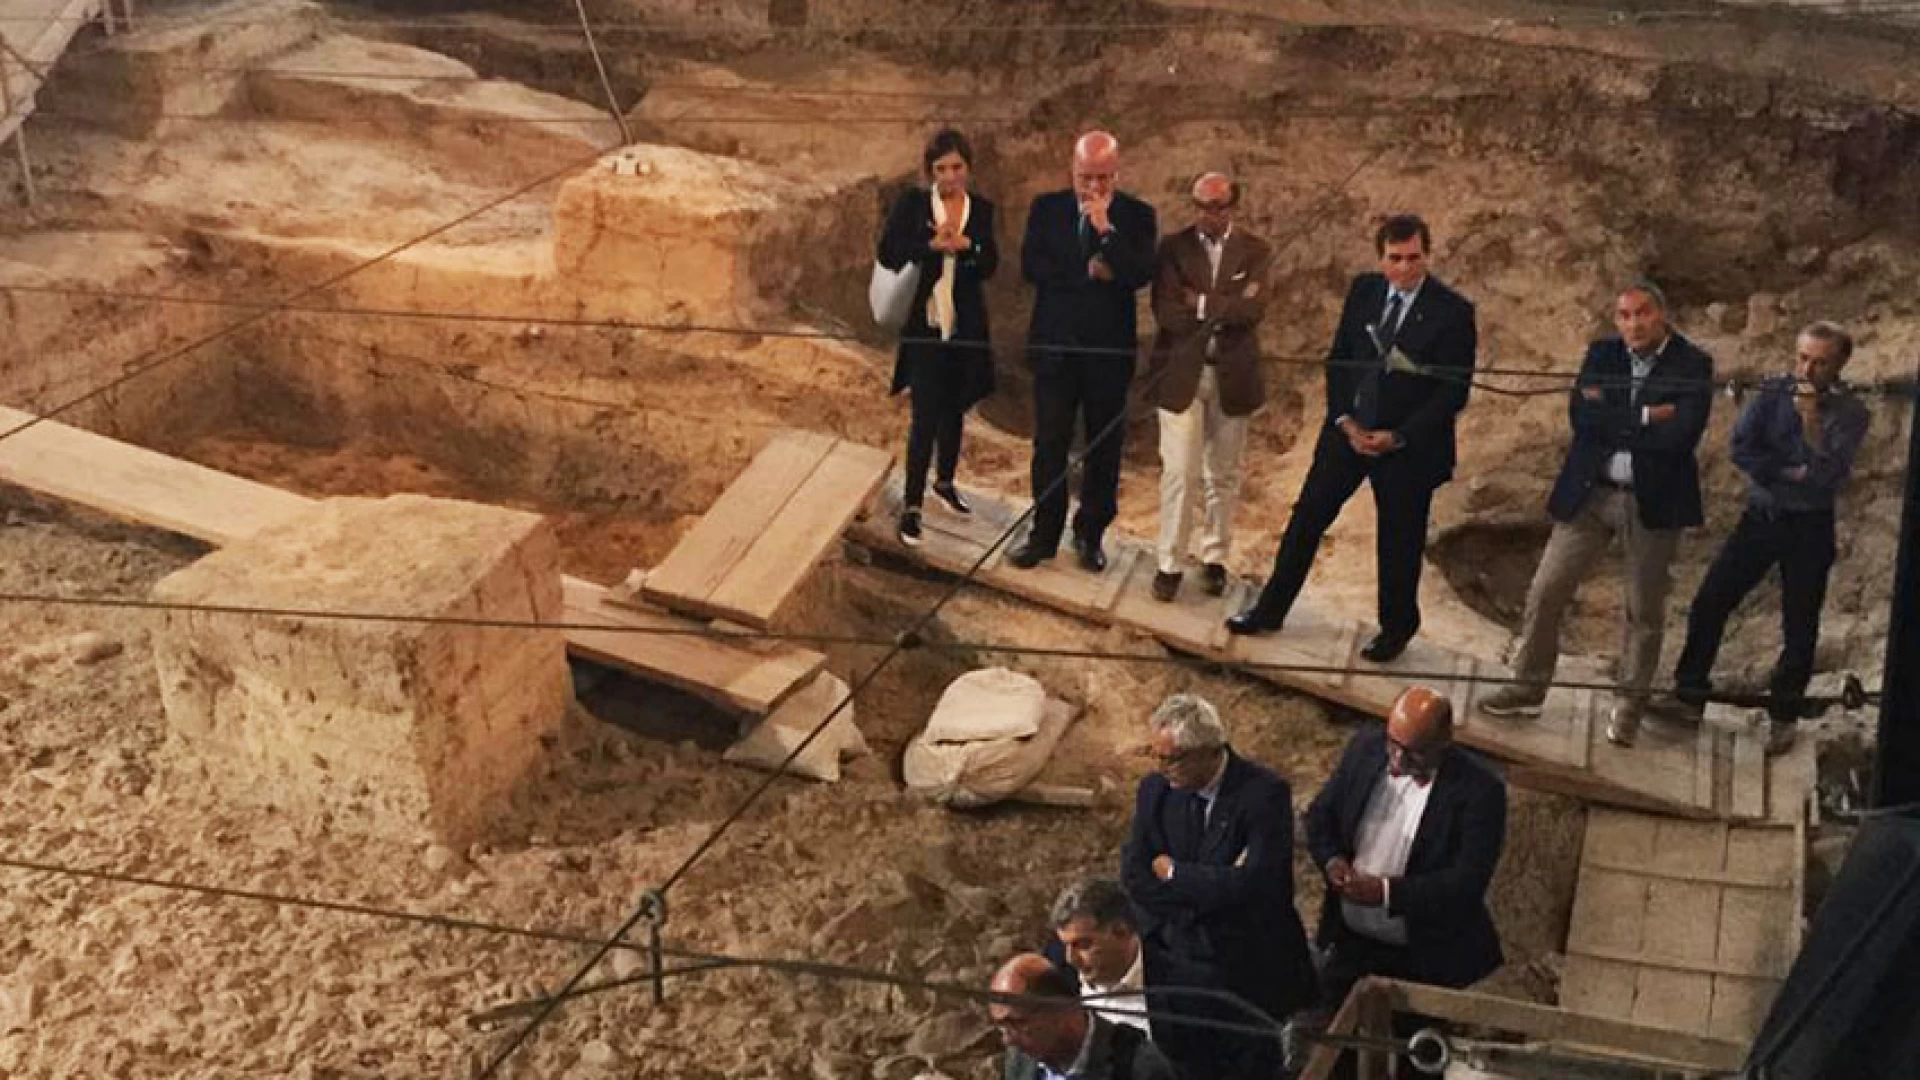 Isernia: ripartita la campagna di scavi al Paleolitico. “Numerose le novità rispetto al passato”. Così il presidente della Provincia Lorenzo Coia.